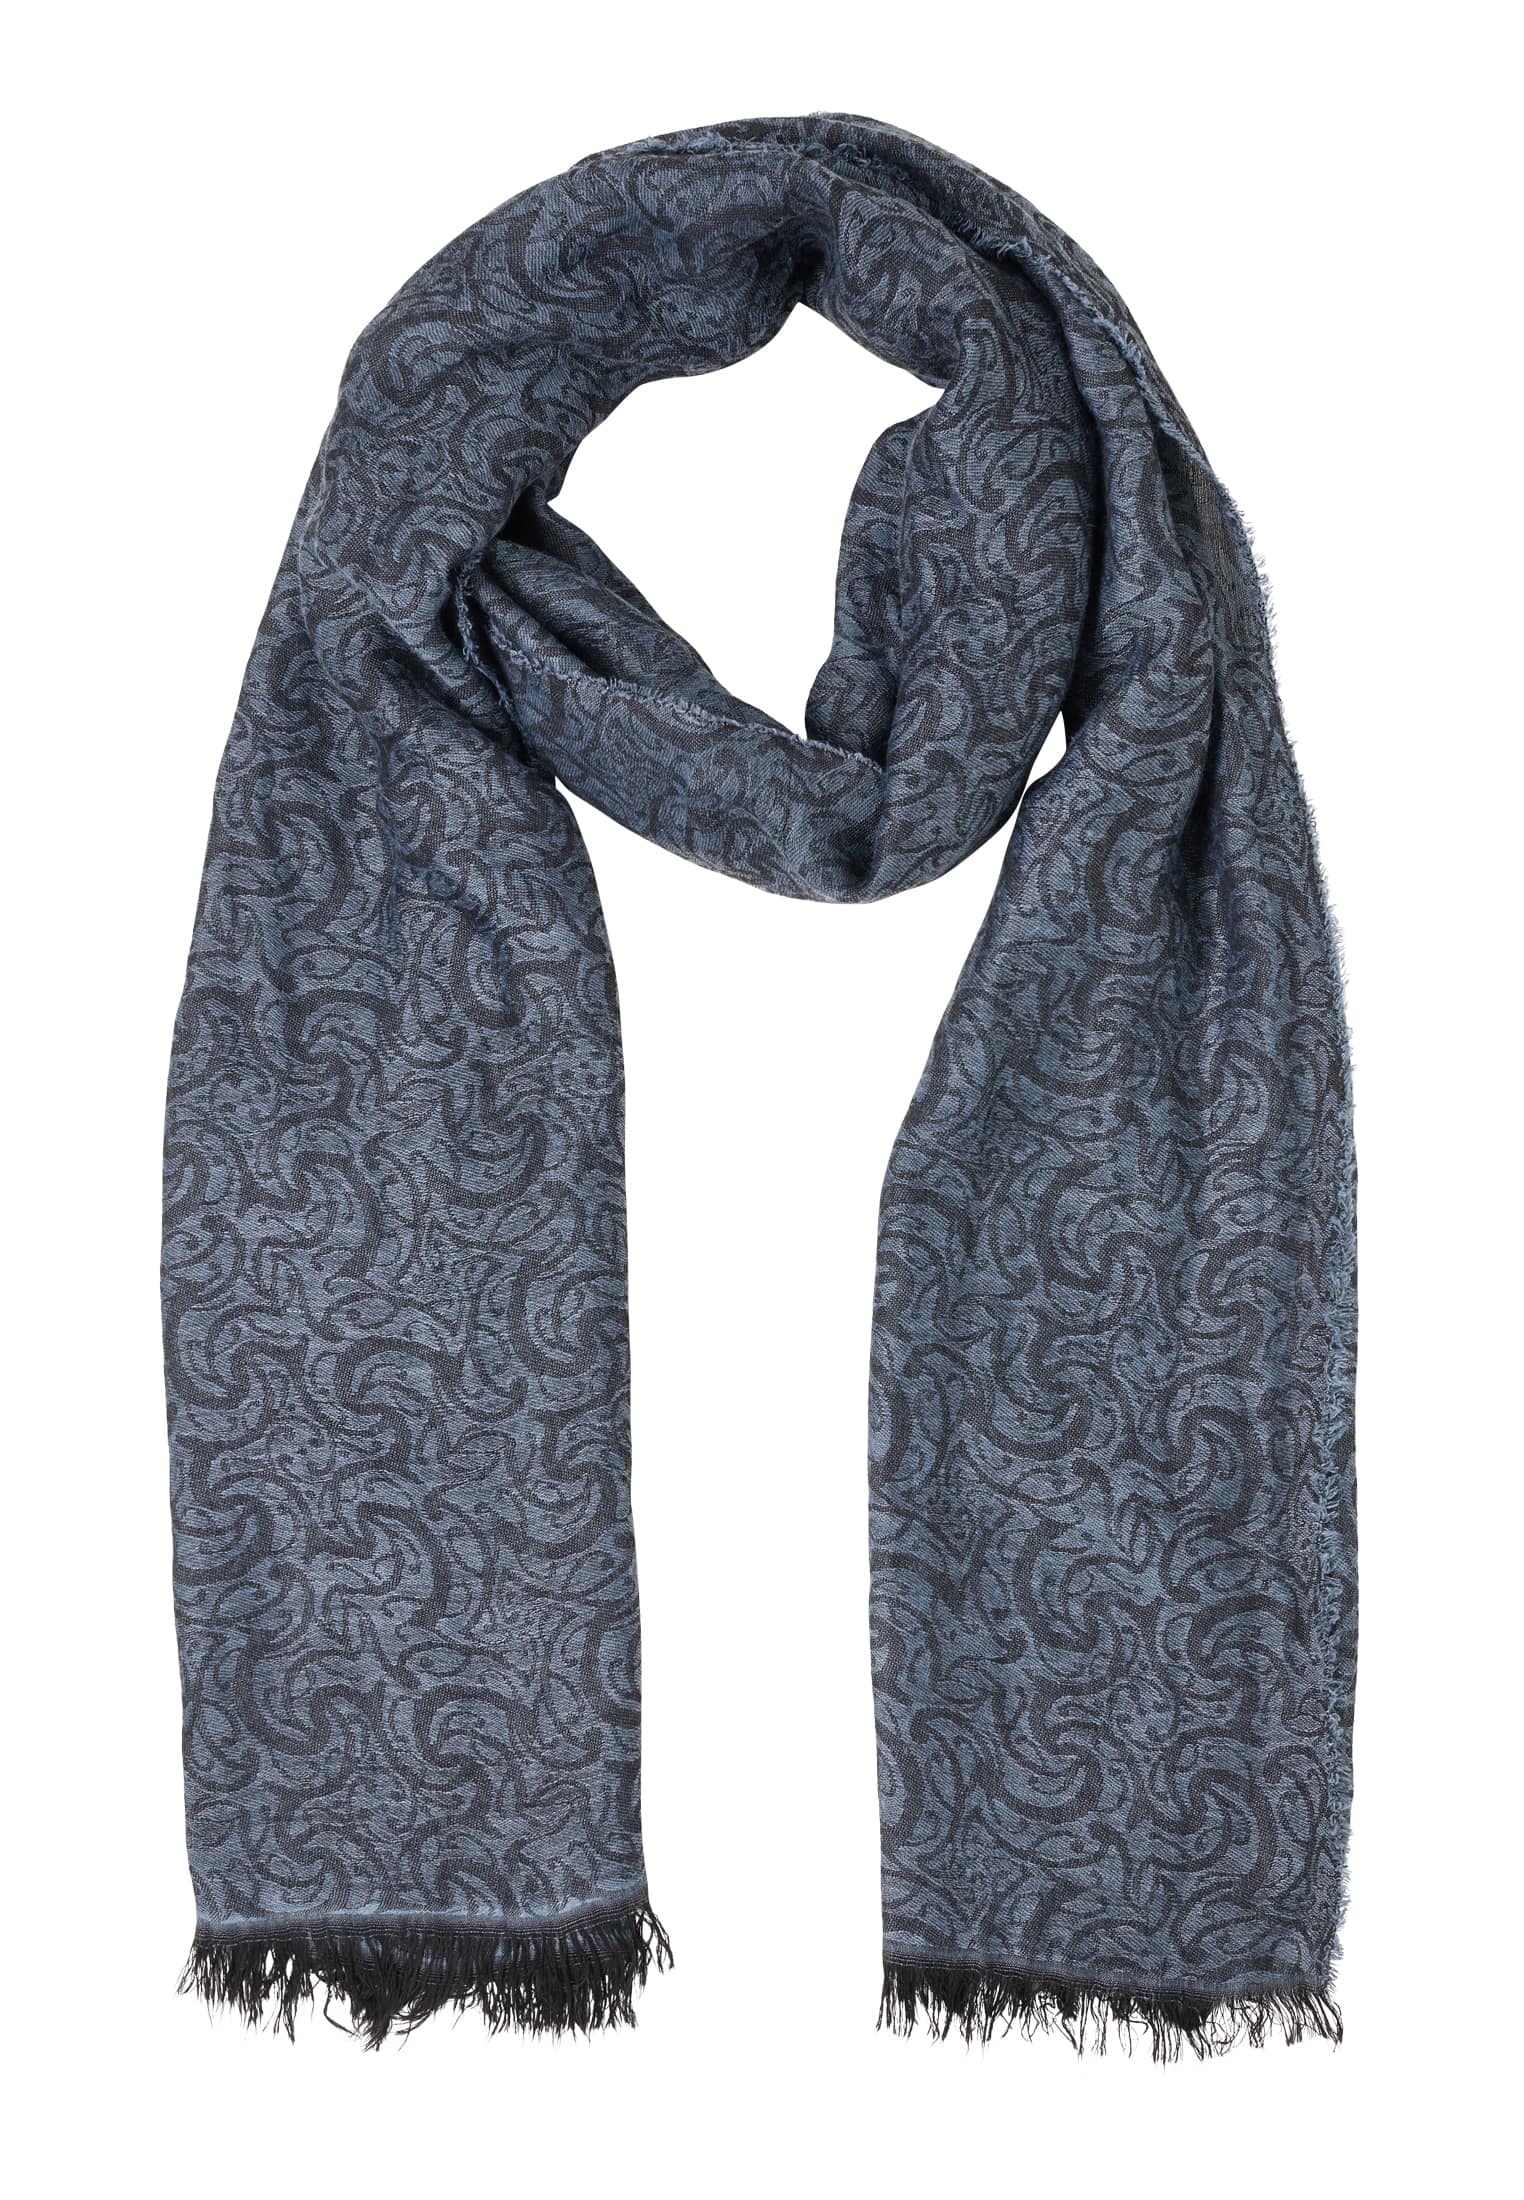 patterned men's scarf